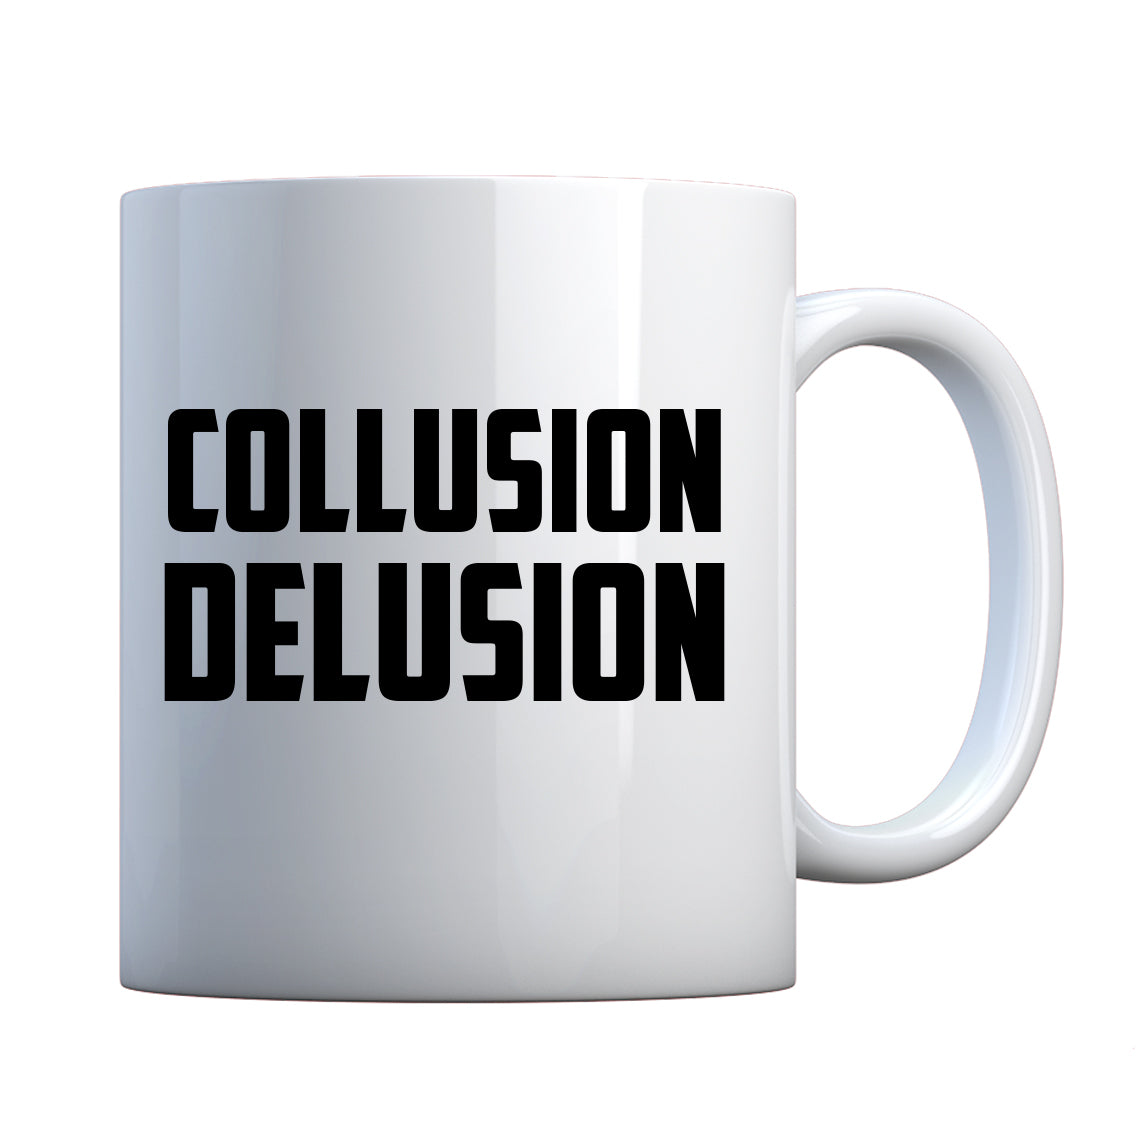 Collusion Delusion Ceramic Gift Mug